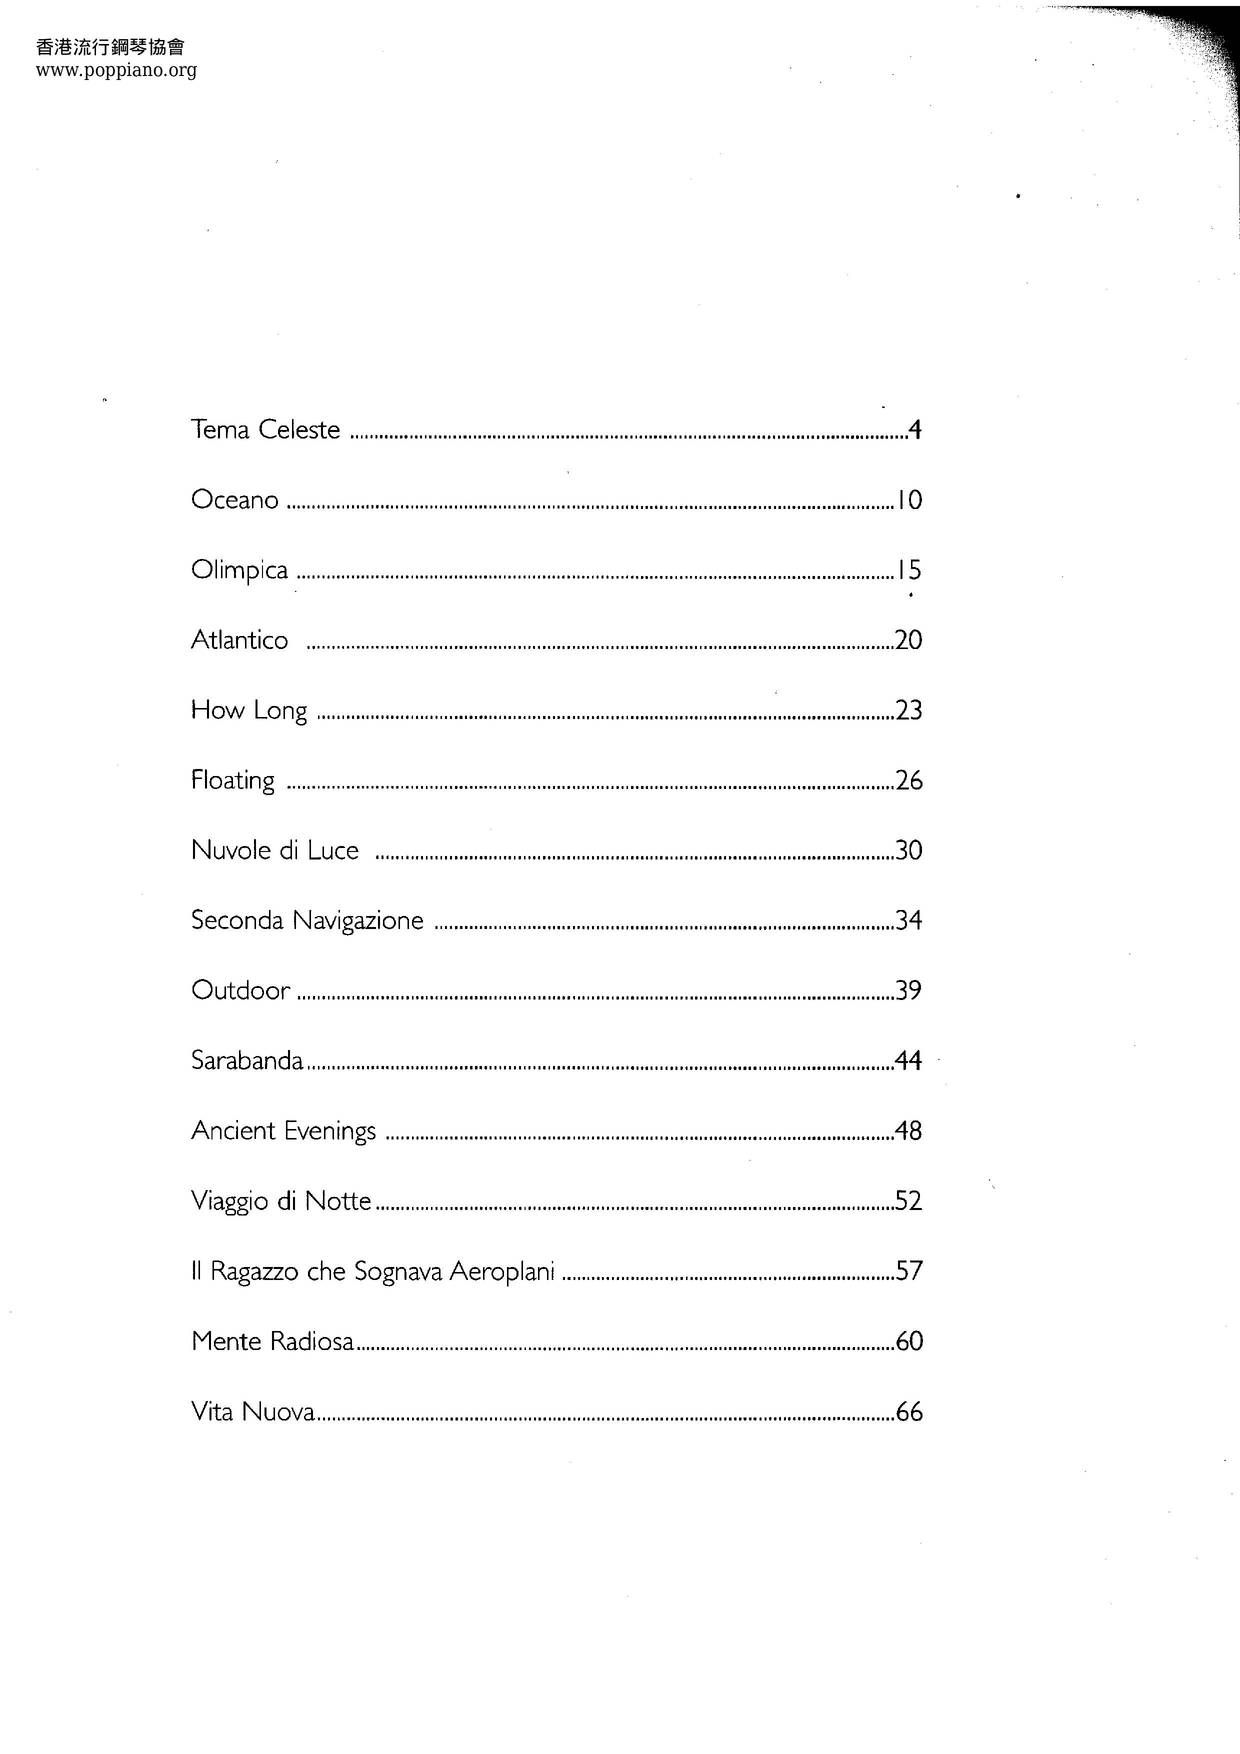 Quarto Tempo Book 70 Pages Score